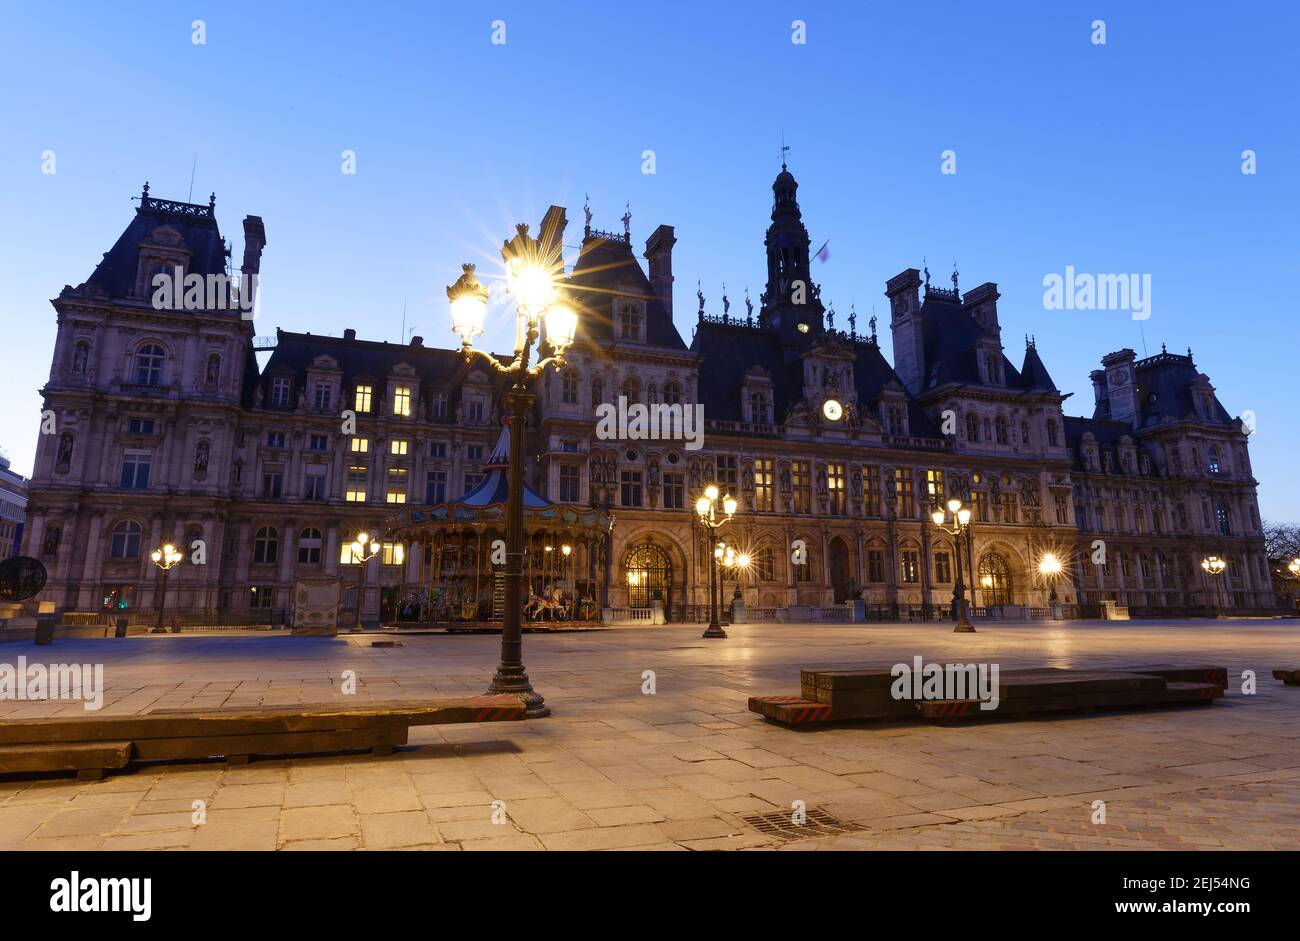 Hôtel de ville à Paris la nuit - bâtiment abritant l'administration de la ville de Paris. France Banque D'Images